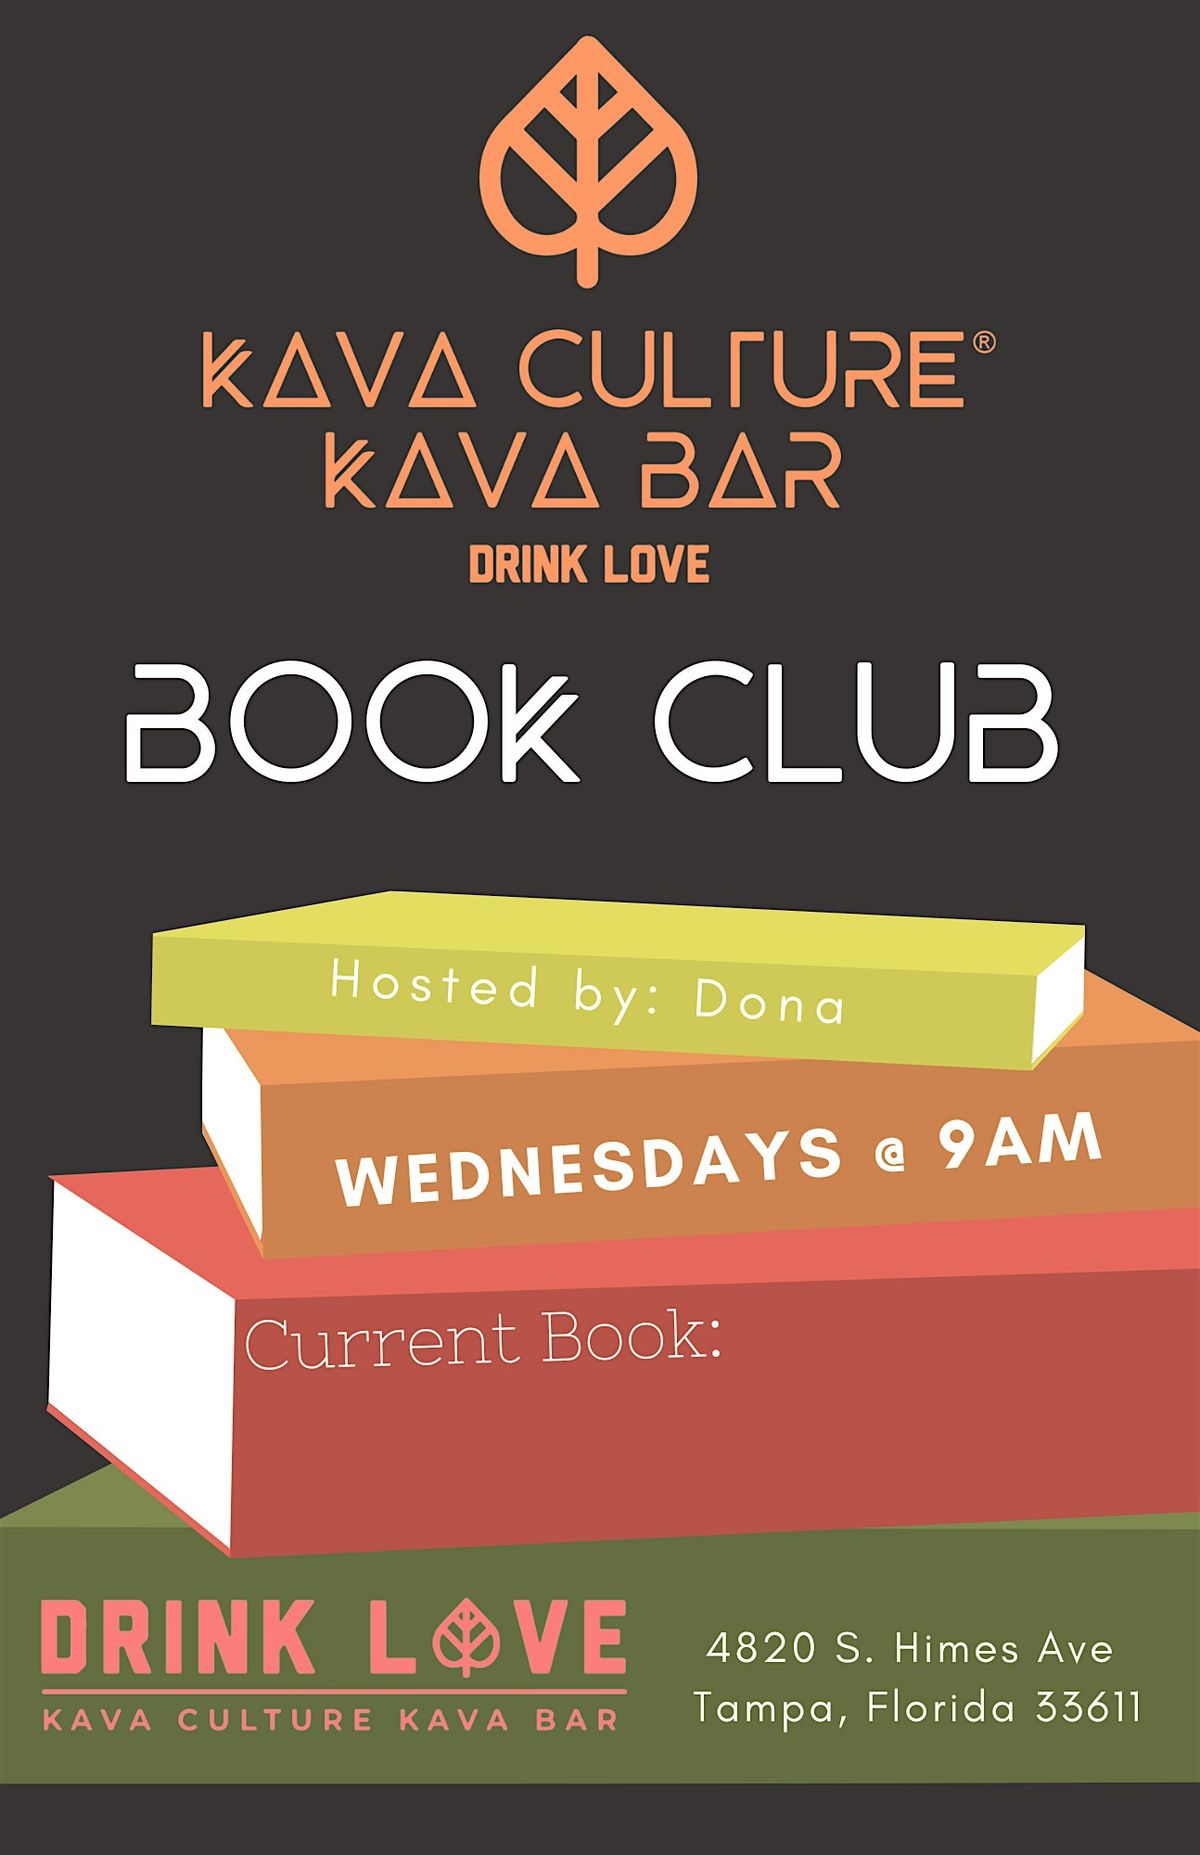 Book Club Wednesdays!